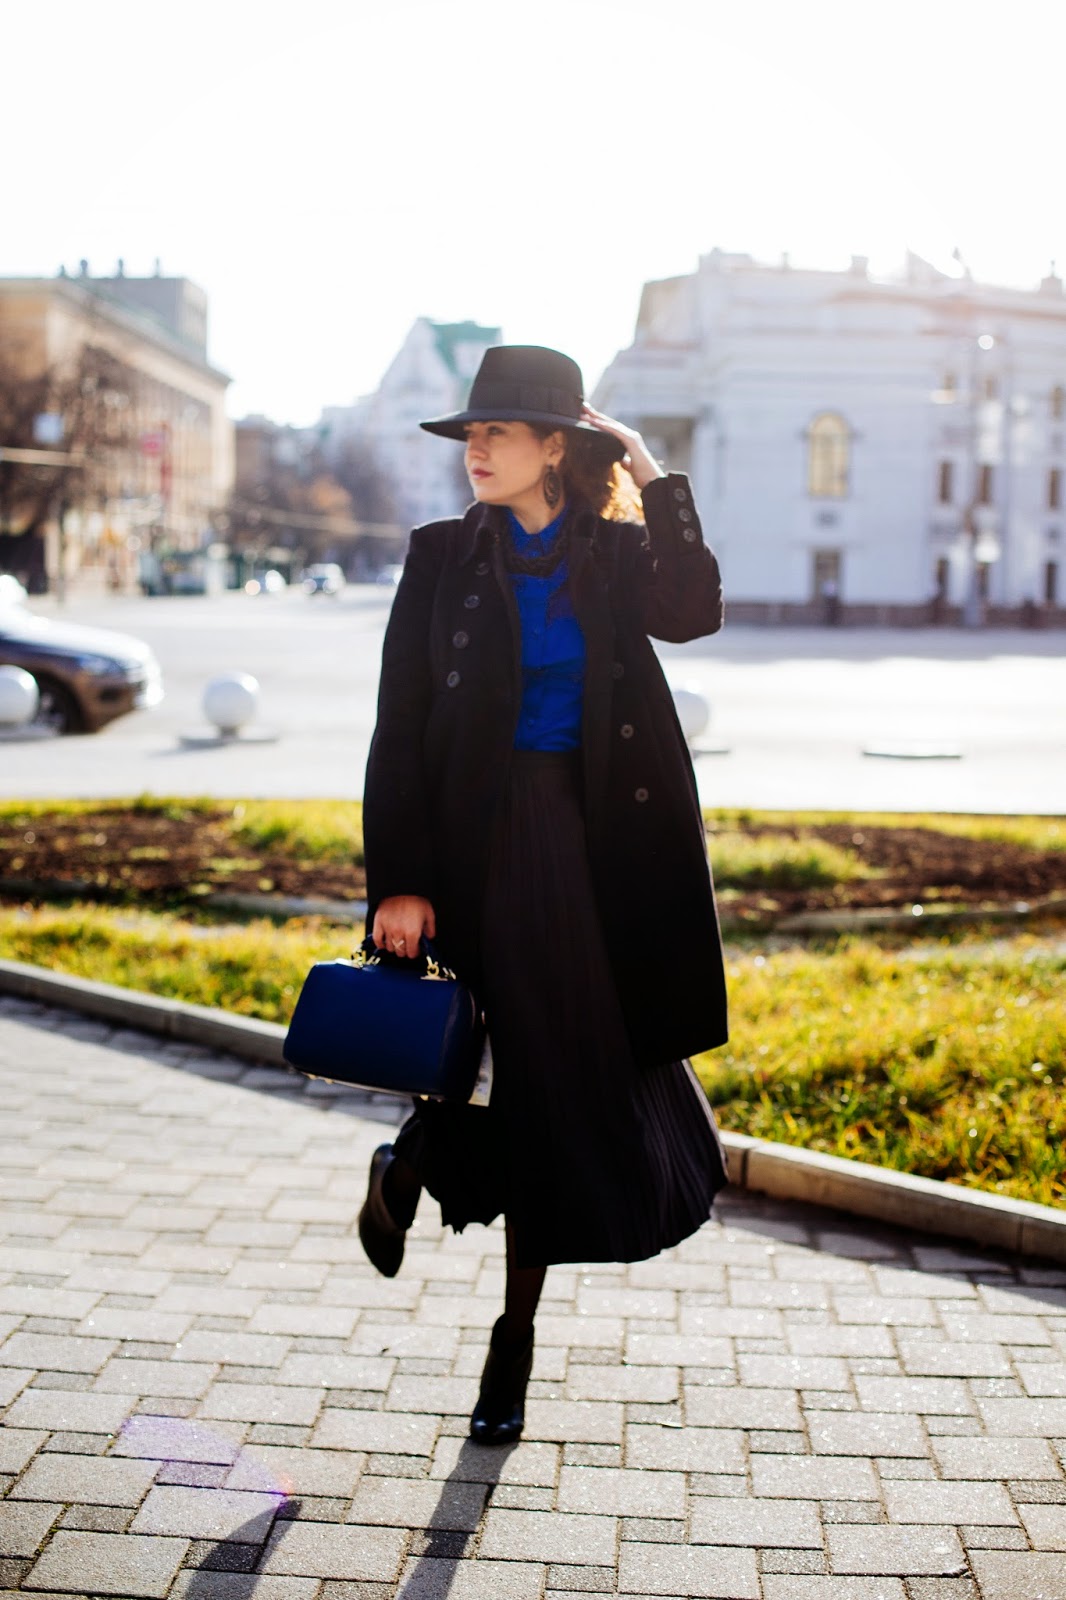 Без шляпы и пальто. Черное пальто и шляпа. Девушка в пальто и шляпе. Шляпа к пальто длинному. Девушка в длинном пальто и шляпе.